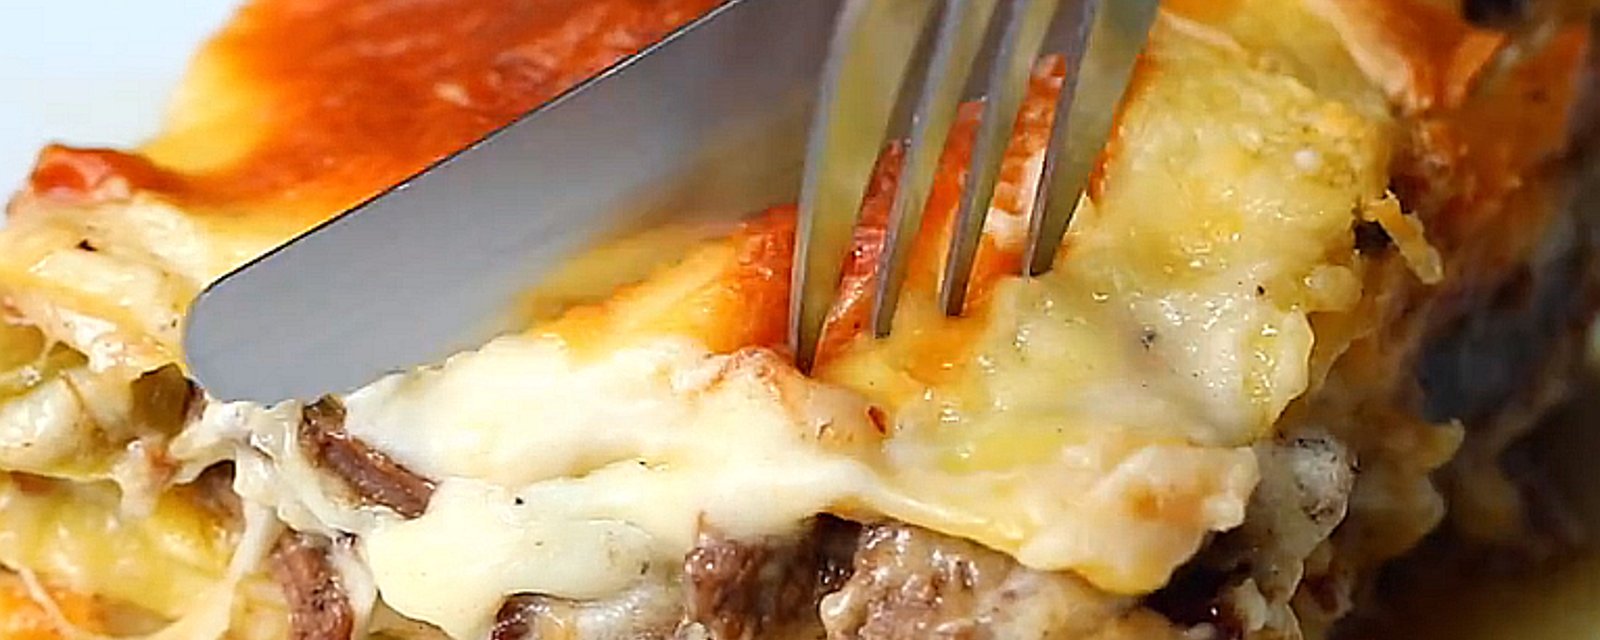 Vous aurez un coup de coeur pour cette lasagne au bifteck et au fromage